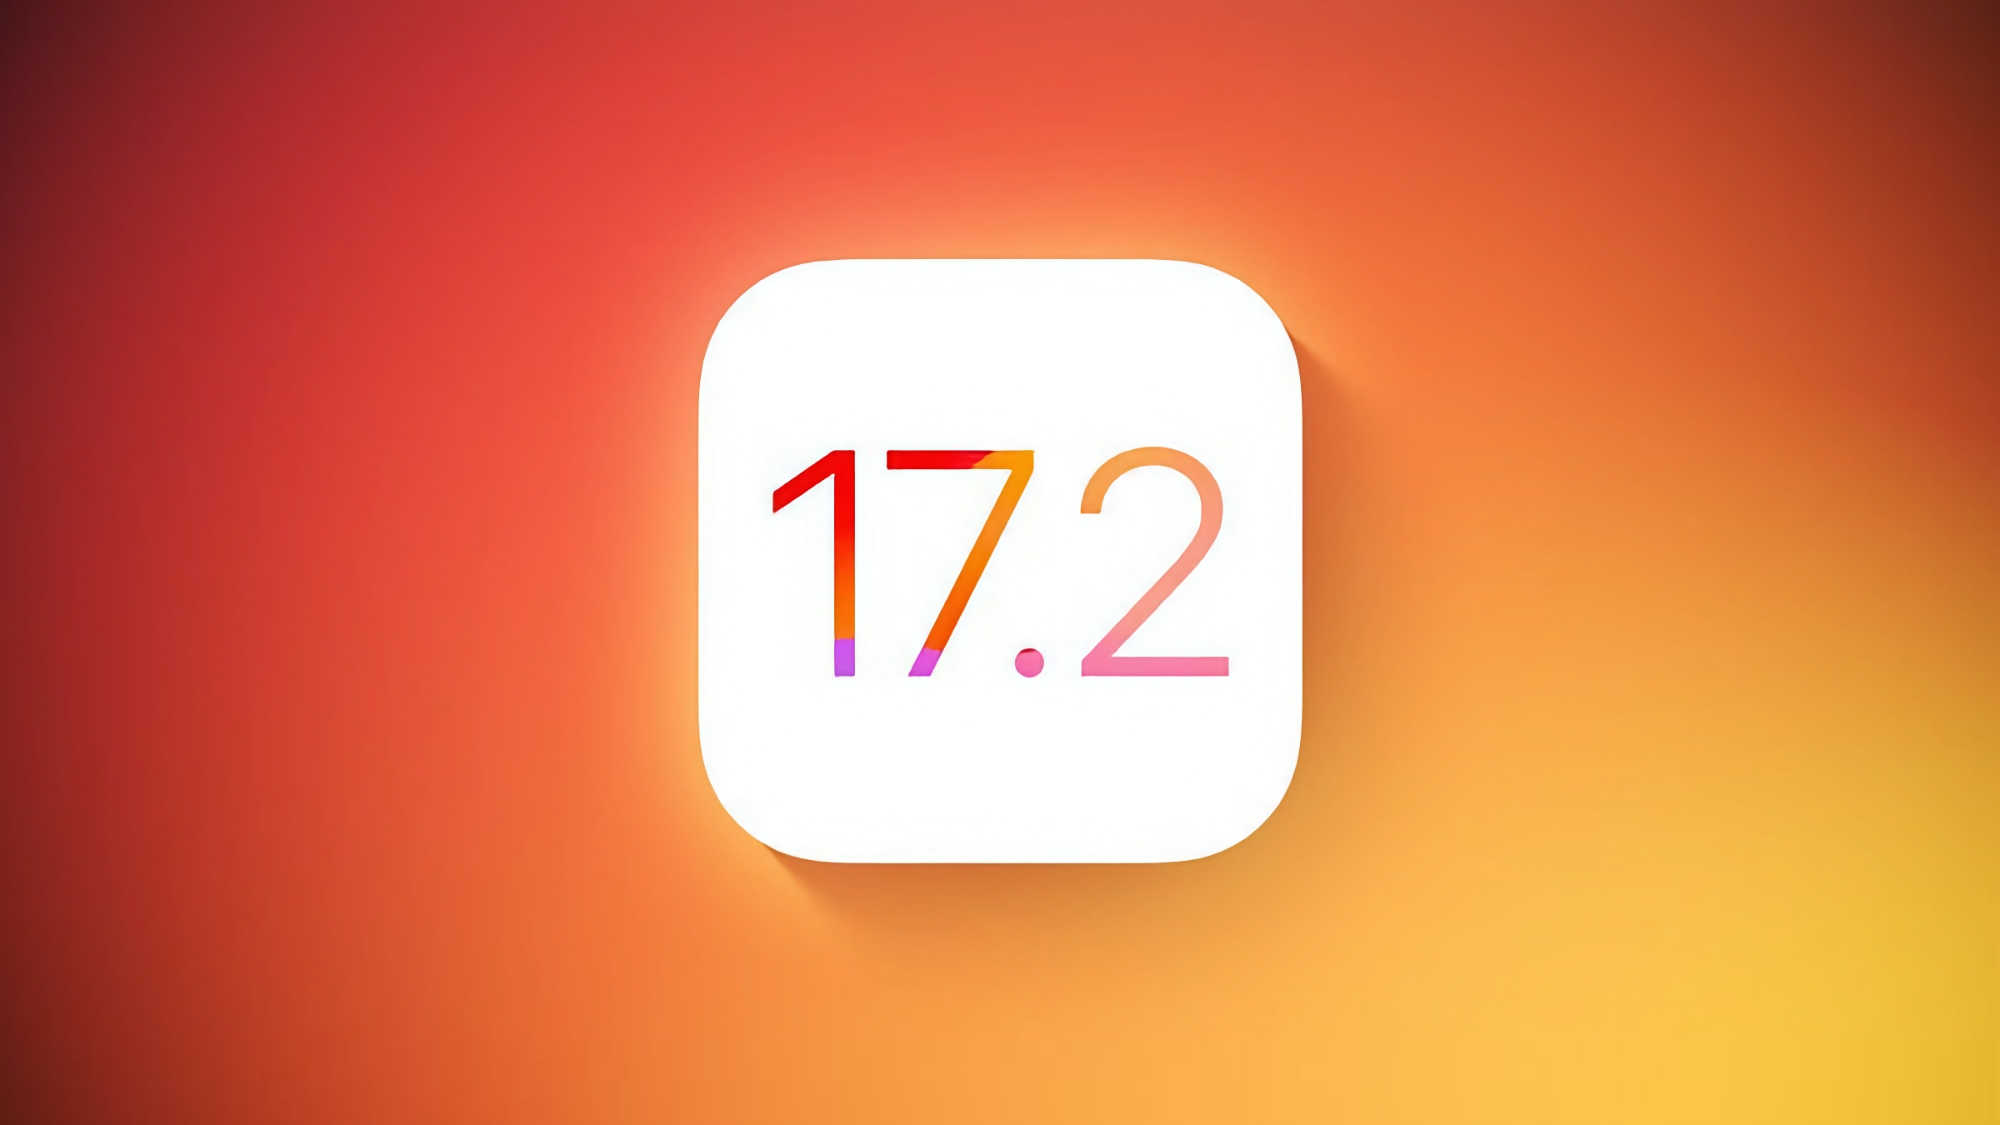 Apple hat iOS 17.2 Beta 3 veröffentlicht: Was ist neu?